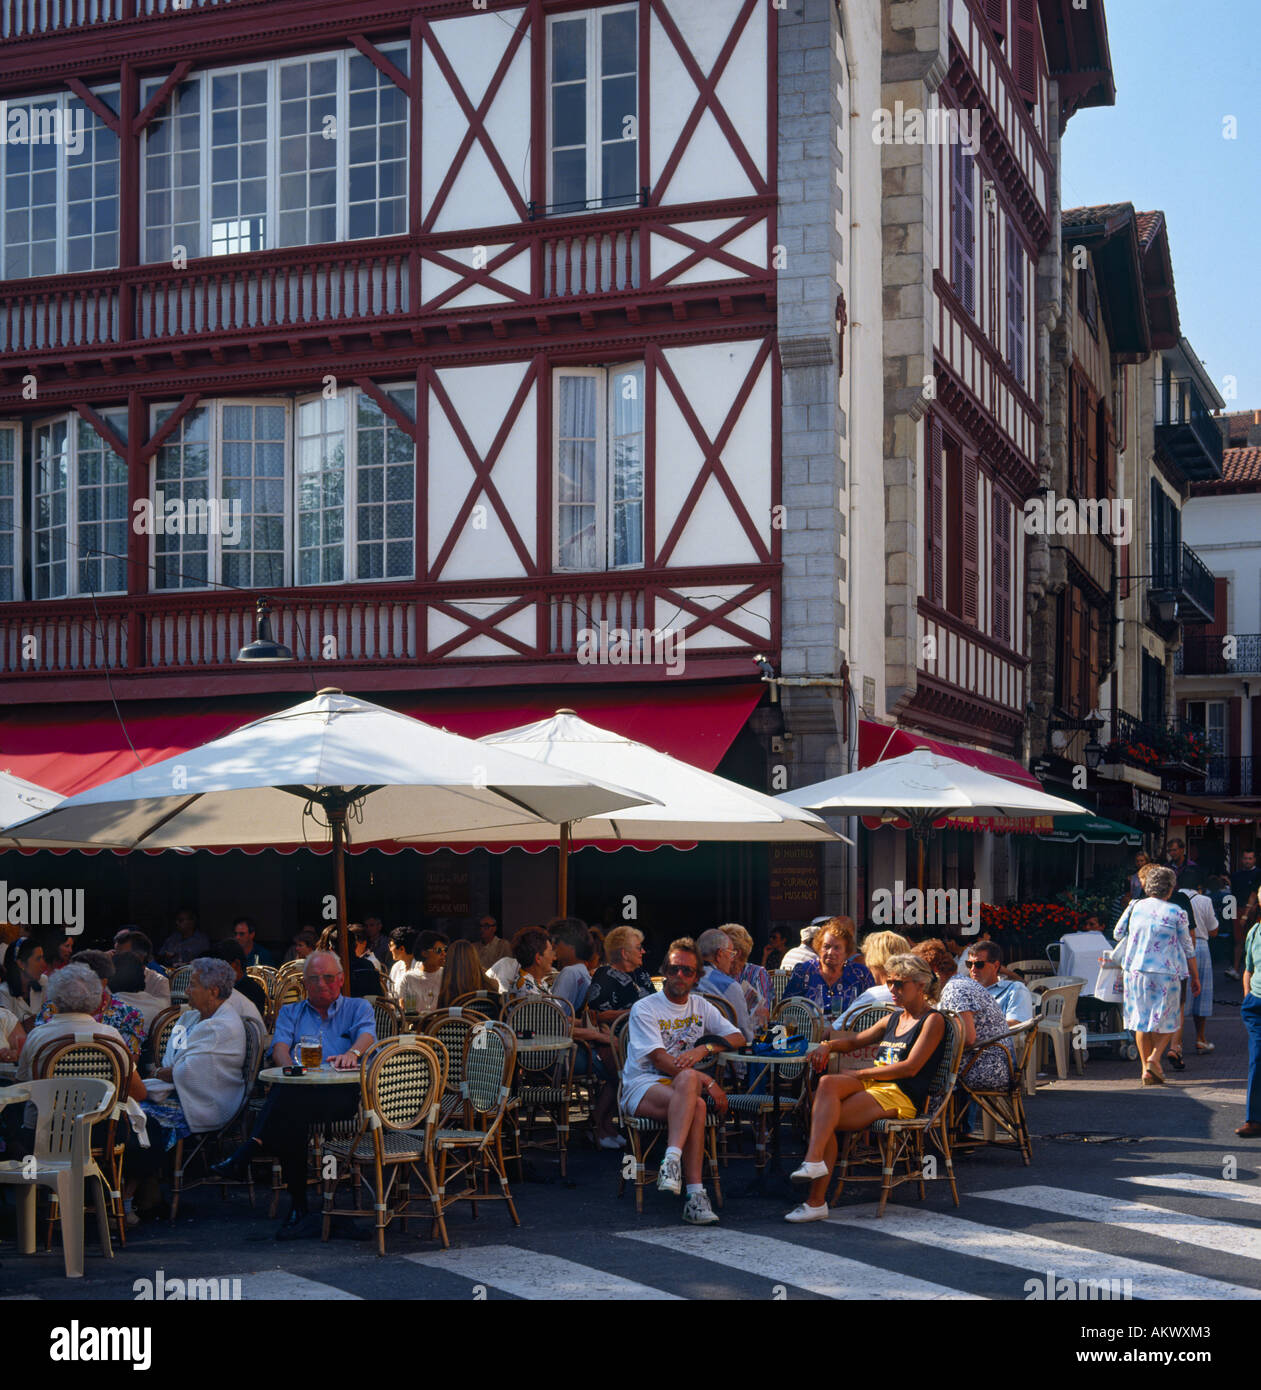 Bianco pietra dipinta la struttura di legno ristorante con persone mangiare fuori sotto gli ombrelloni St Jean de Luz Francia Foto Stock